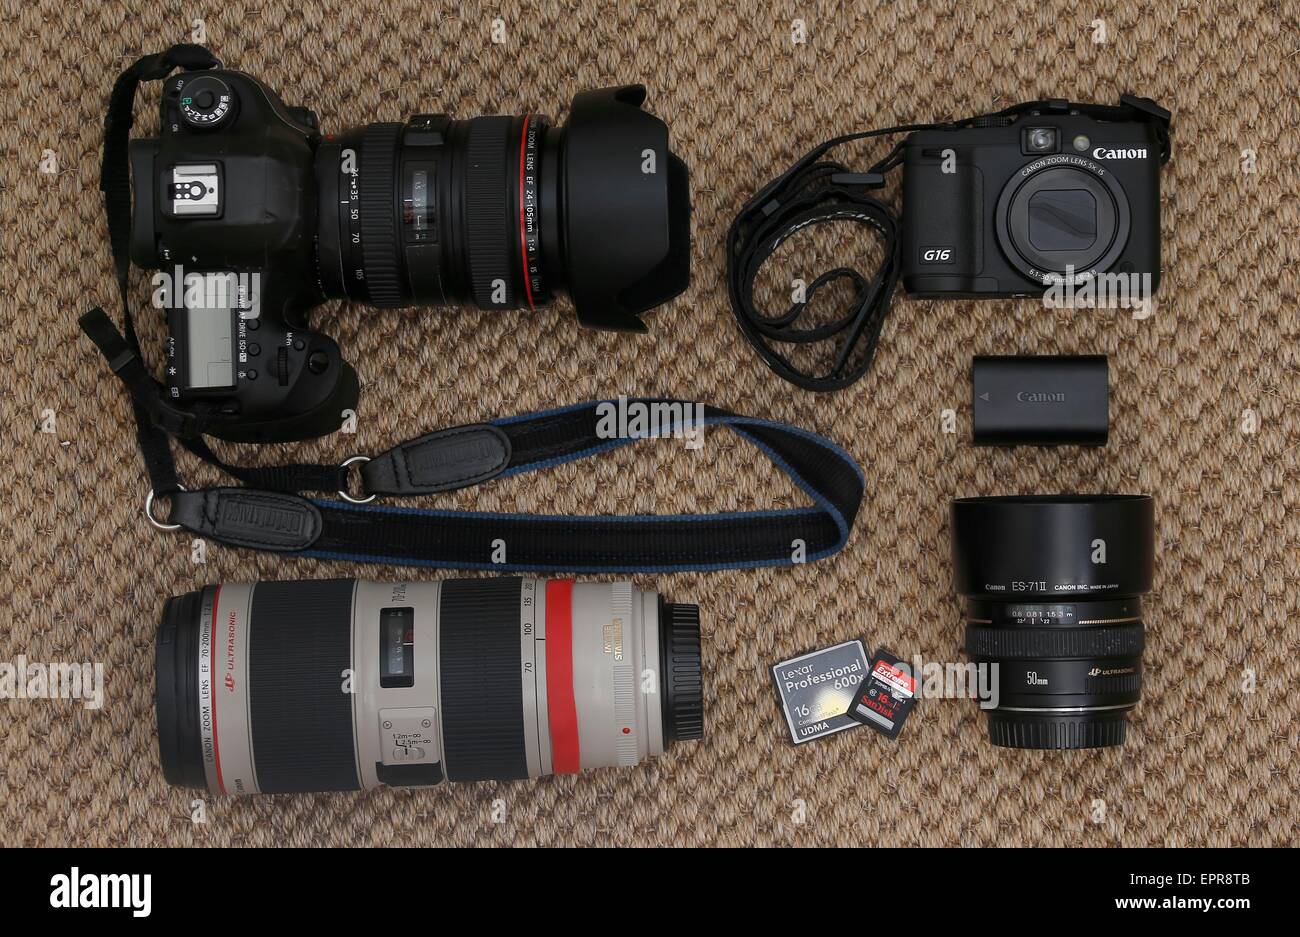 Matériel photographique Canon professionnel y compris les organes de l' appareil photo et une sélection de verres et accessoires Photo Stock - Alamy